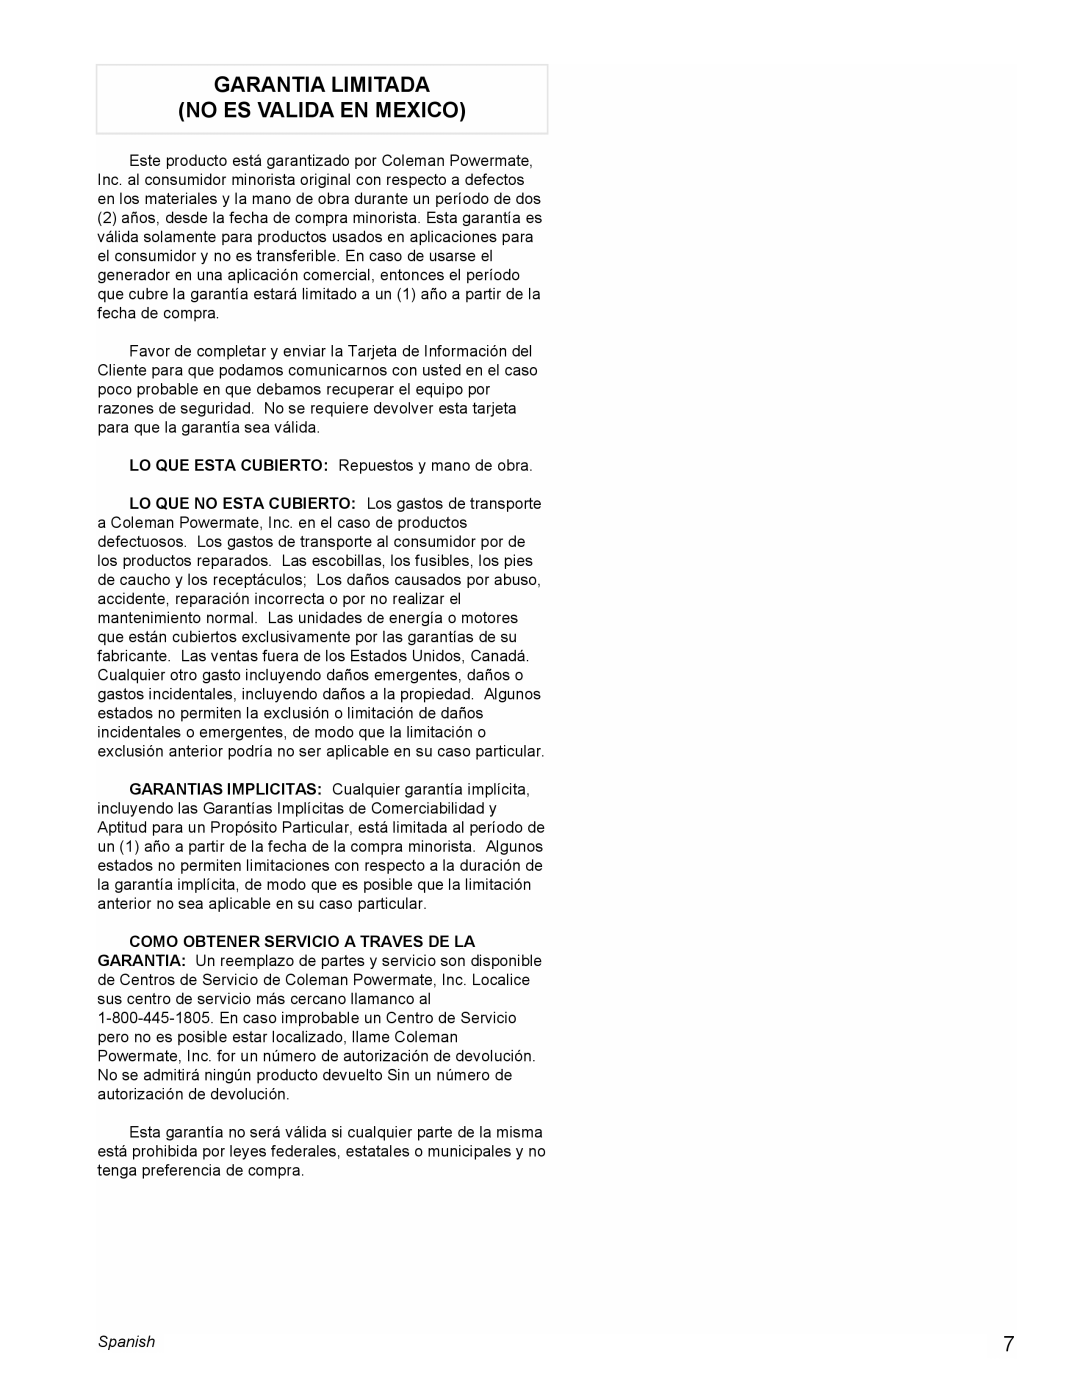 Powermate PL0495503 manual Garantia Limitada No Es Valida En Mexico, Spanish 